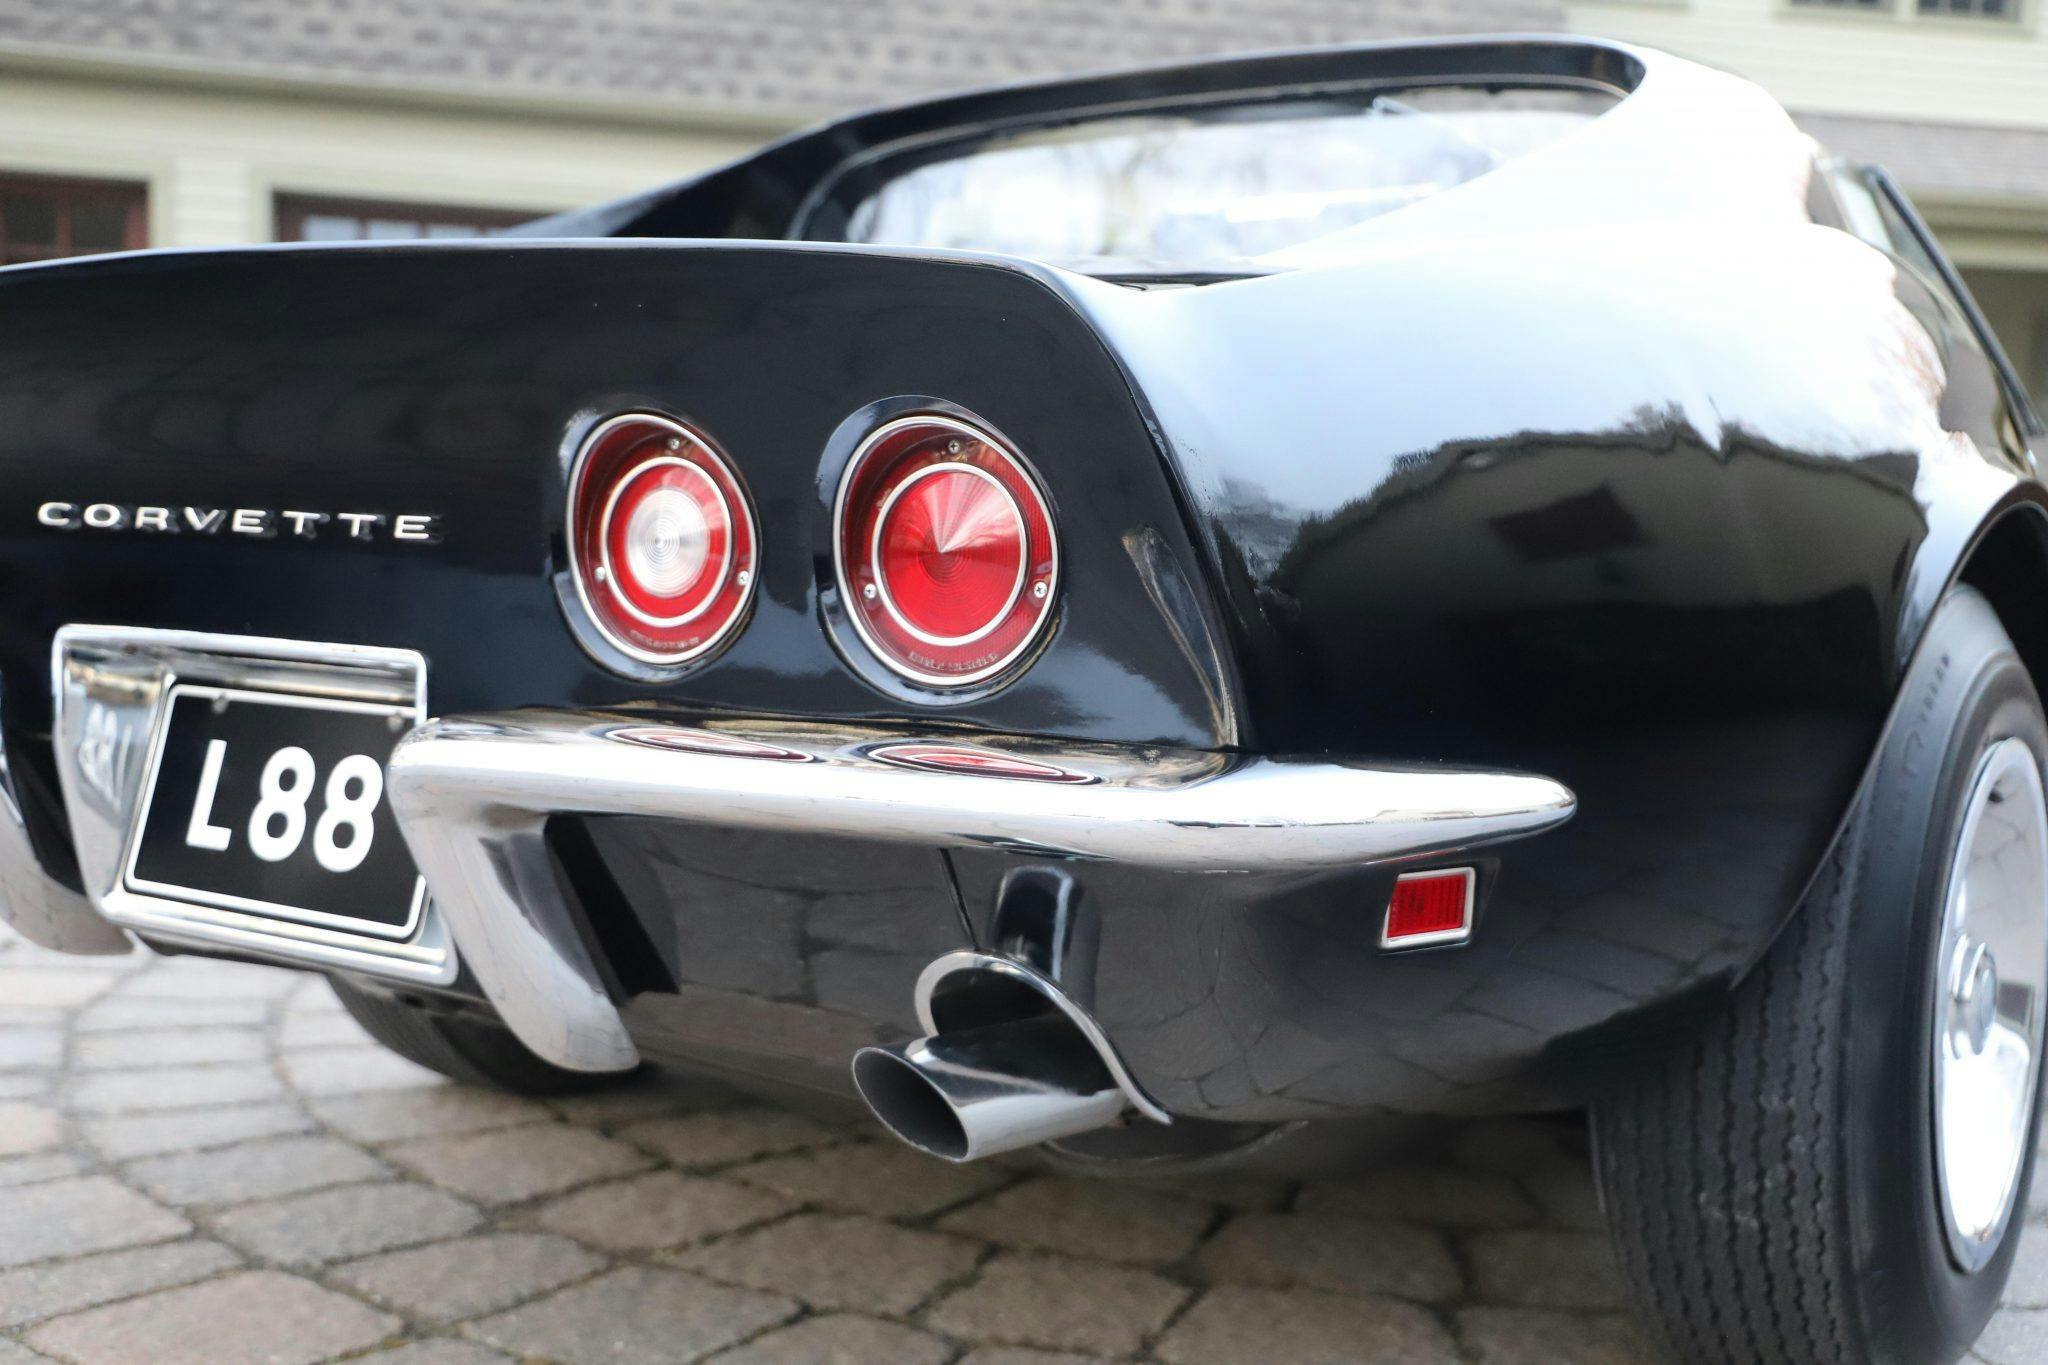 1969 Chevrolet Corvette L88 coupe Tuxedo Black rear exhaust